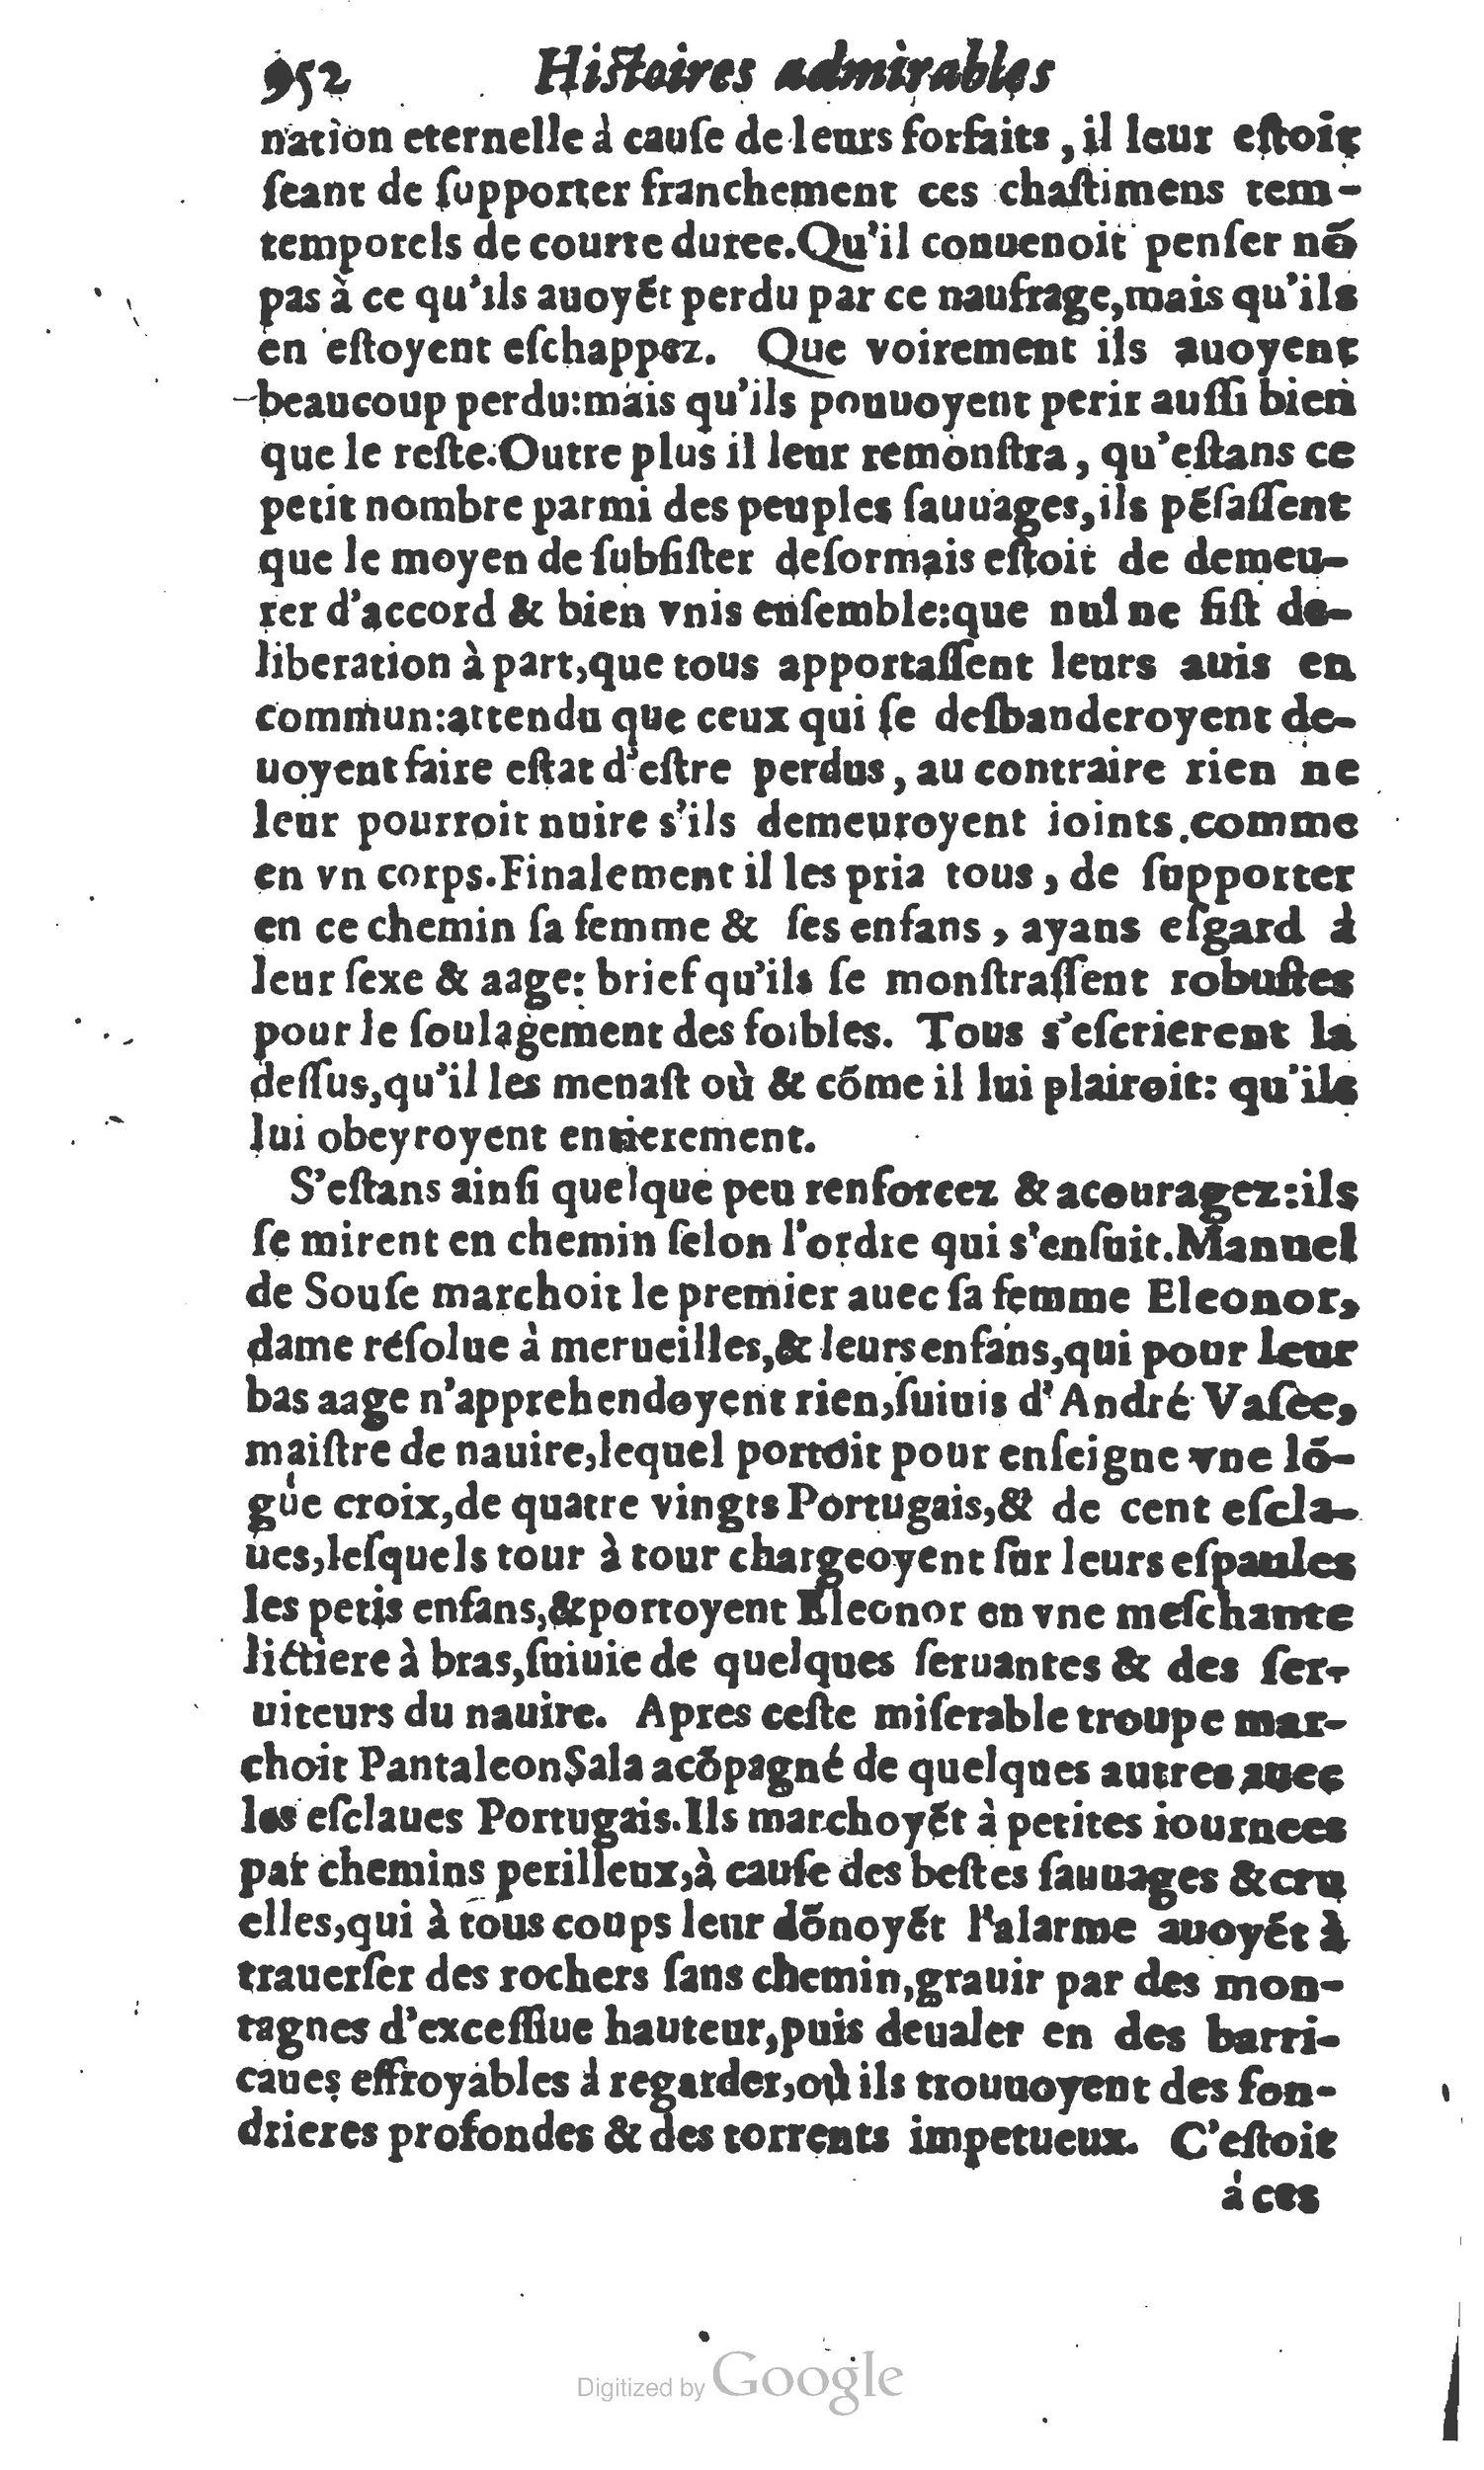 1610 Trésor d’histoires admirables et mémorables de nostre temps Marceau Princeton_Page_0973.jpg